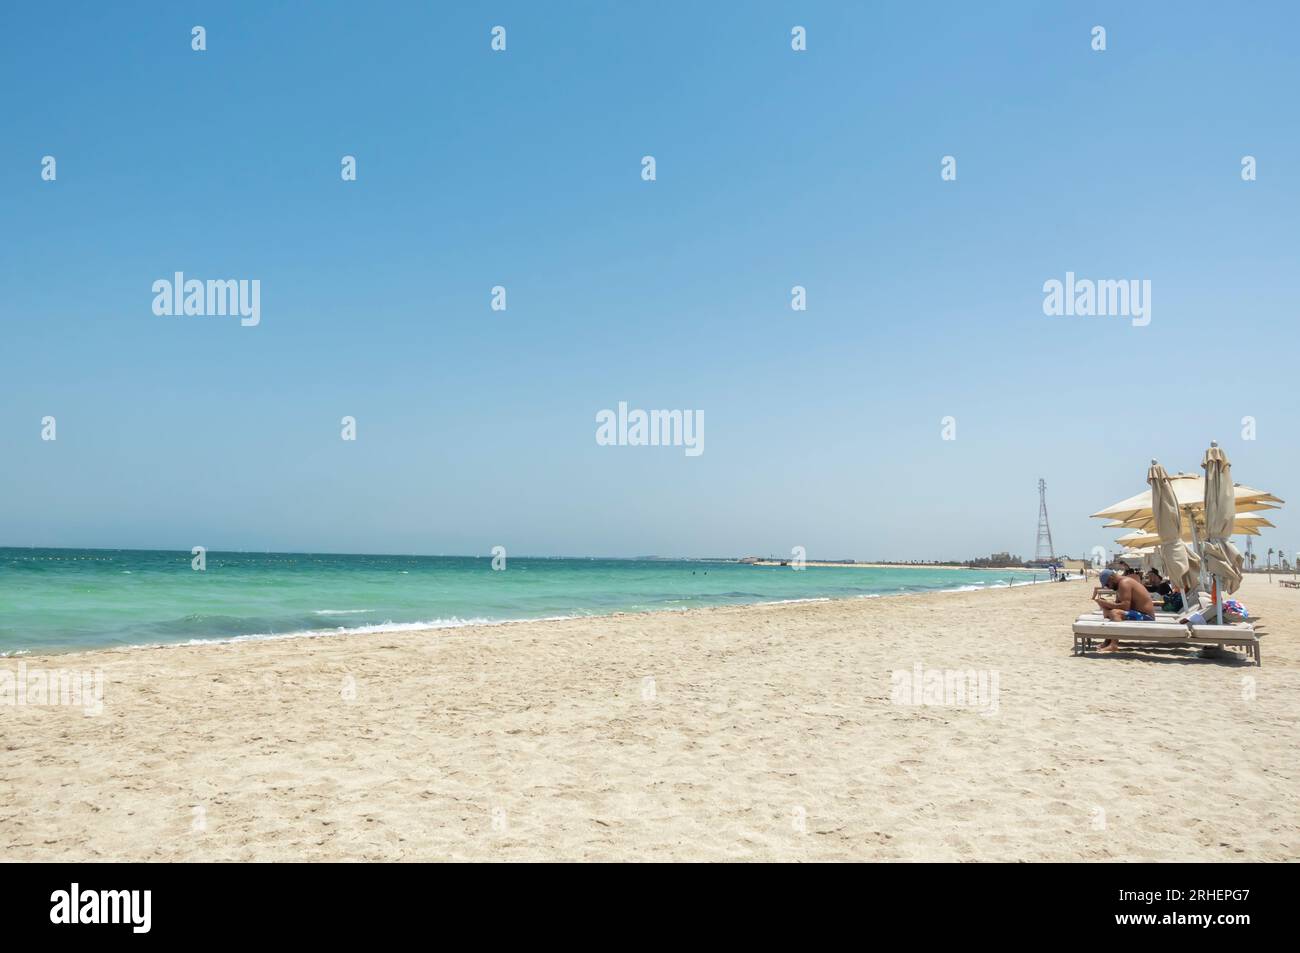 Bilaj Al Jazayer beach in Bahrain Stock Photo